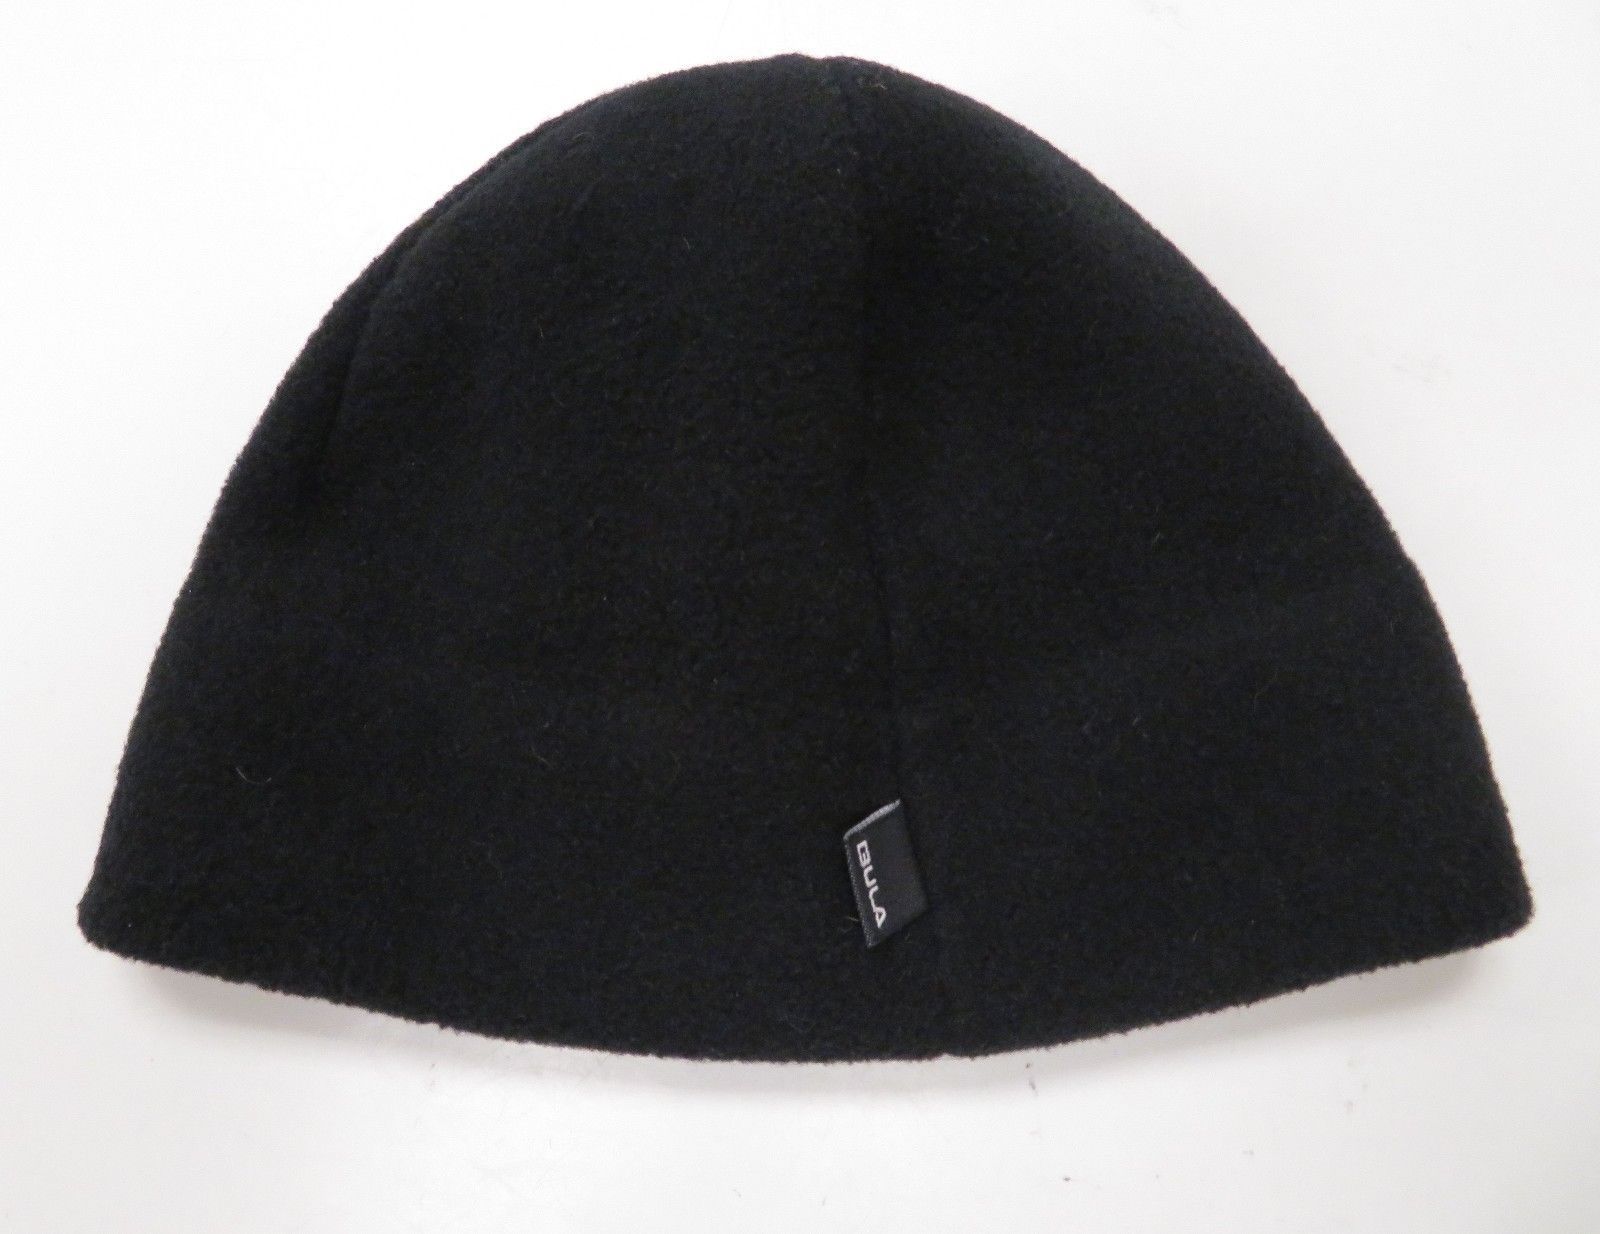 Bula Black Fleece Winter Ski Cap Beanie Polartec Canada - Hats